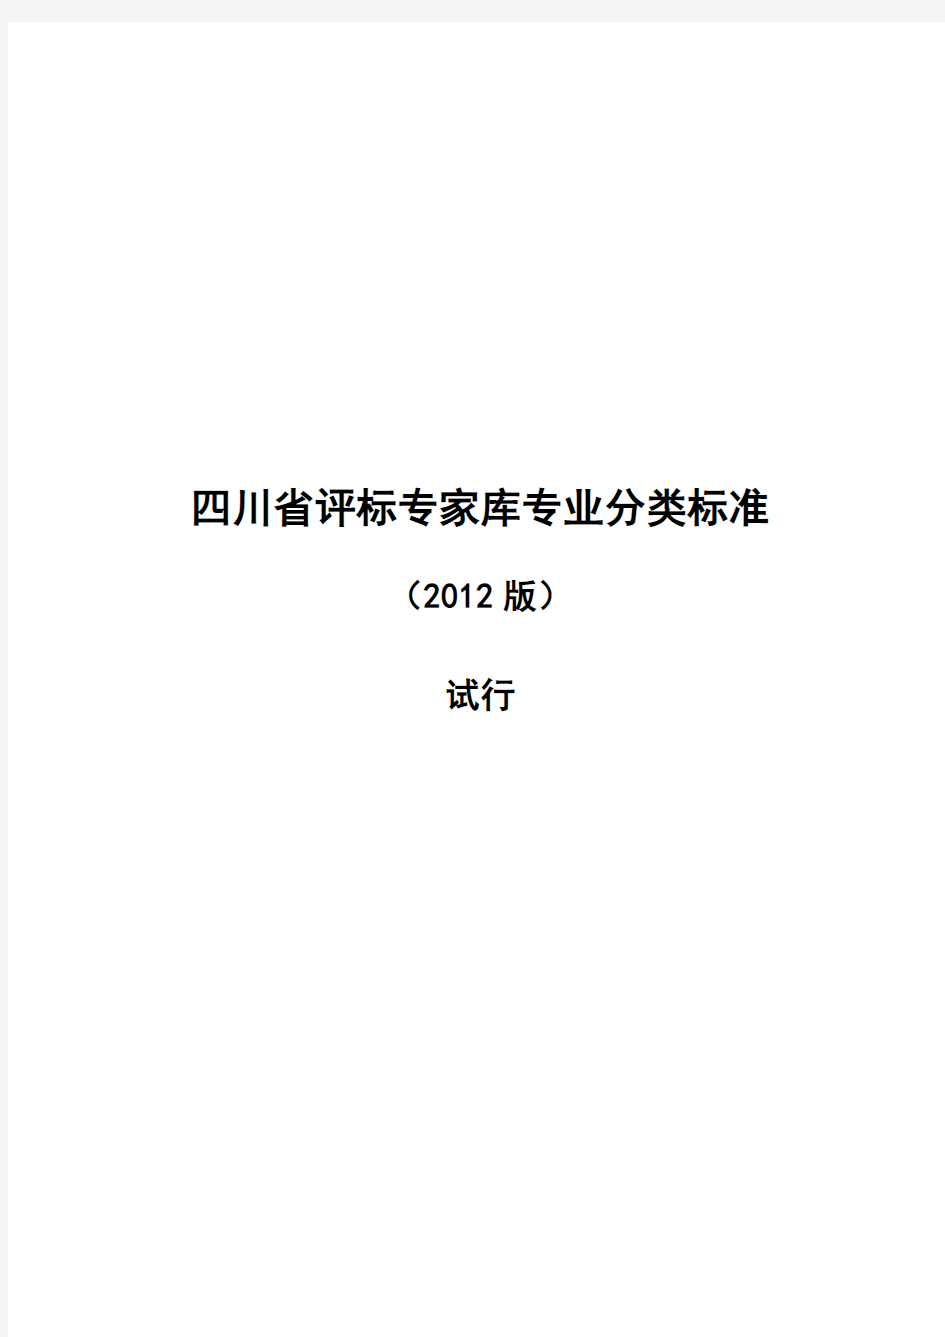 四川省评标专家库专业分类标准(2012版)试行